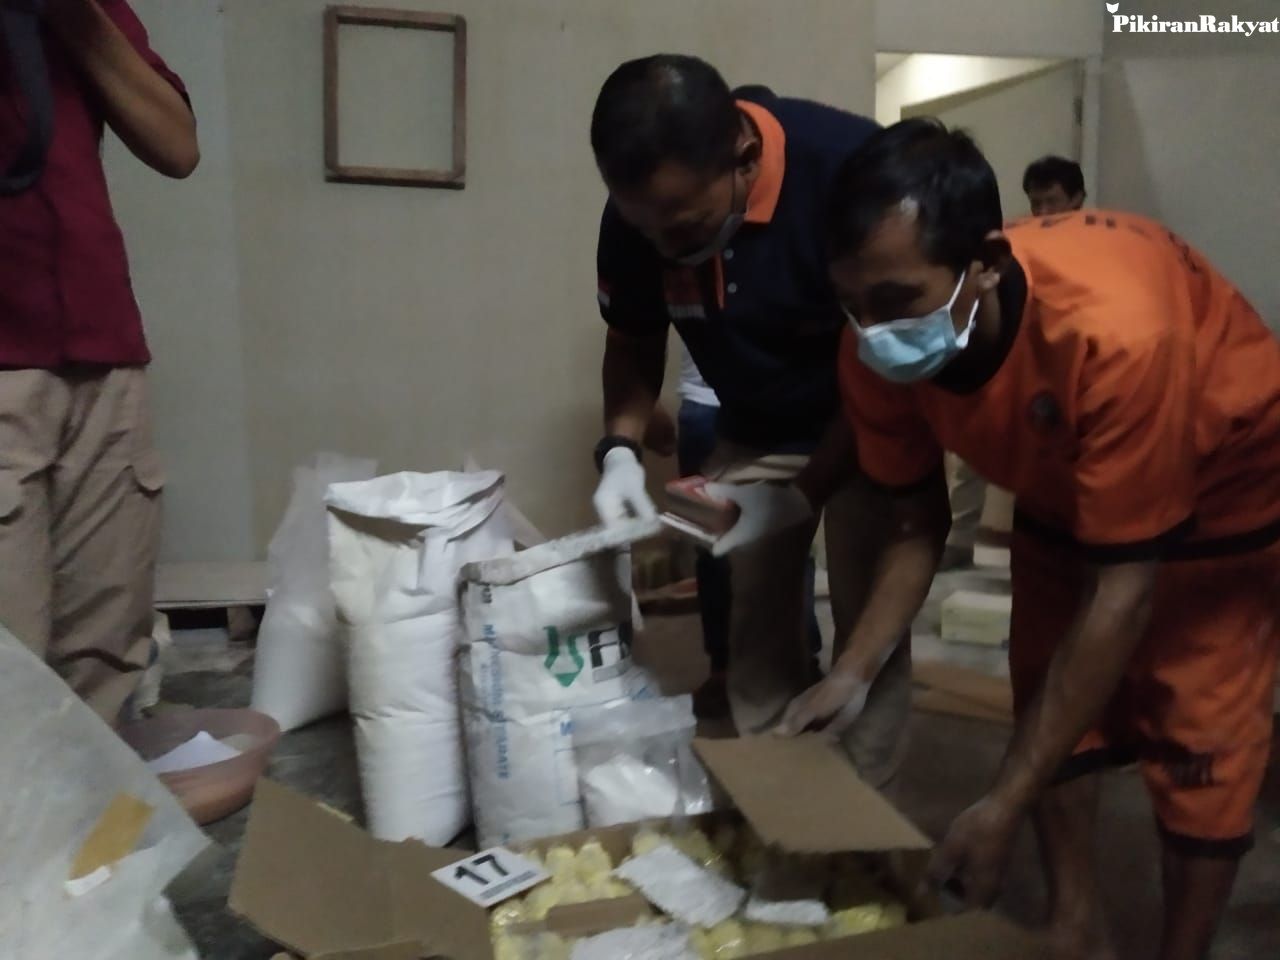 Kasus Produksi Obat Terlarang Rumahan di Bandung  Polda 